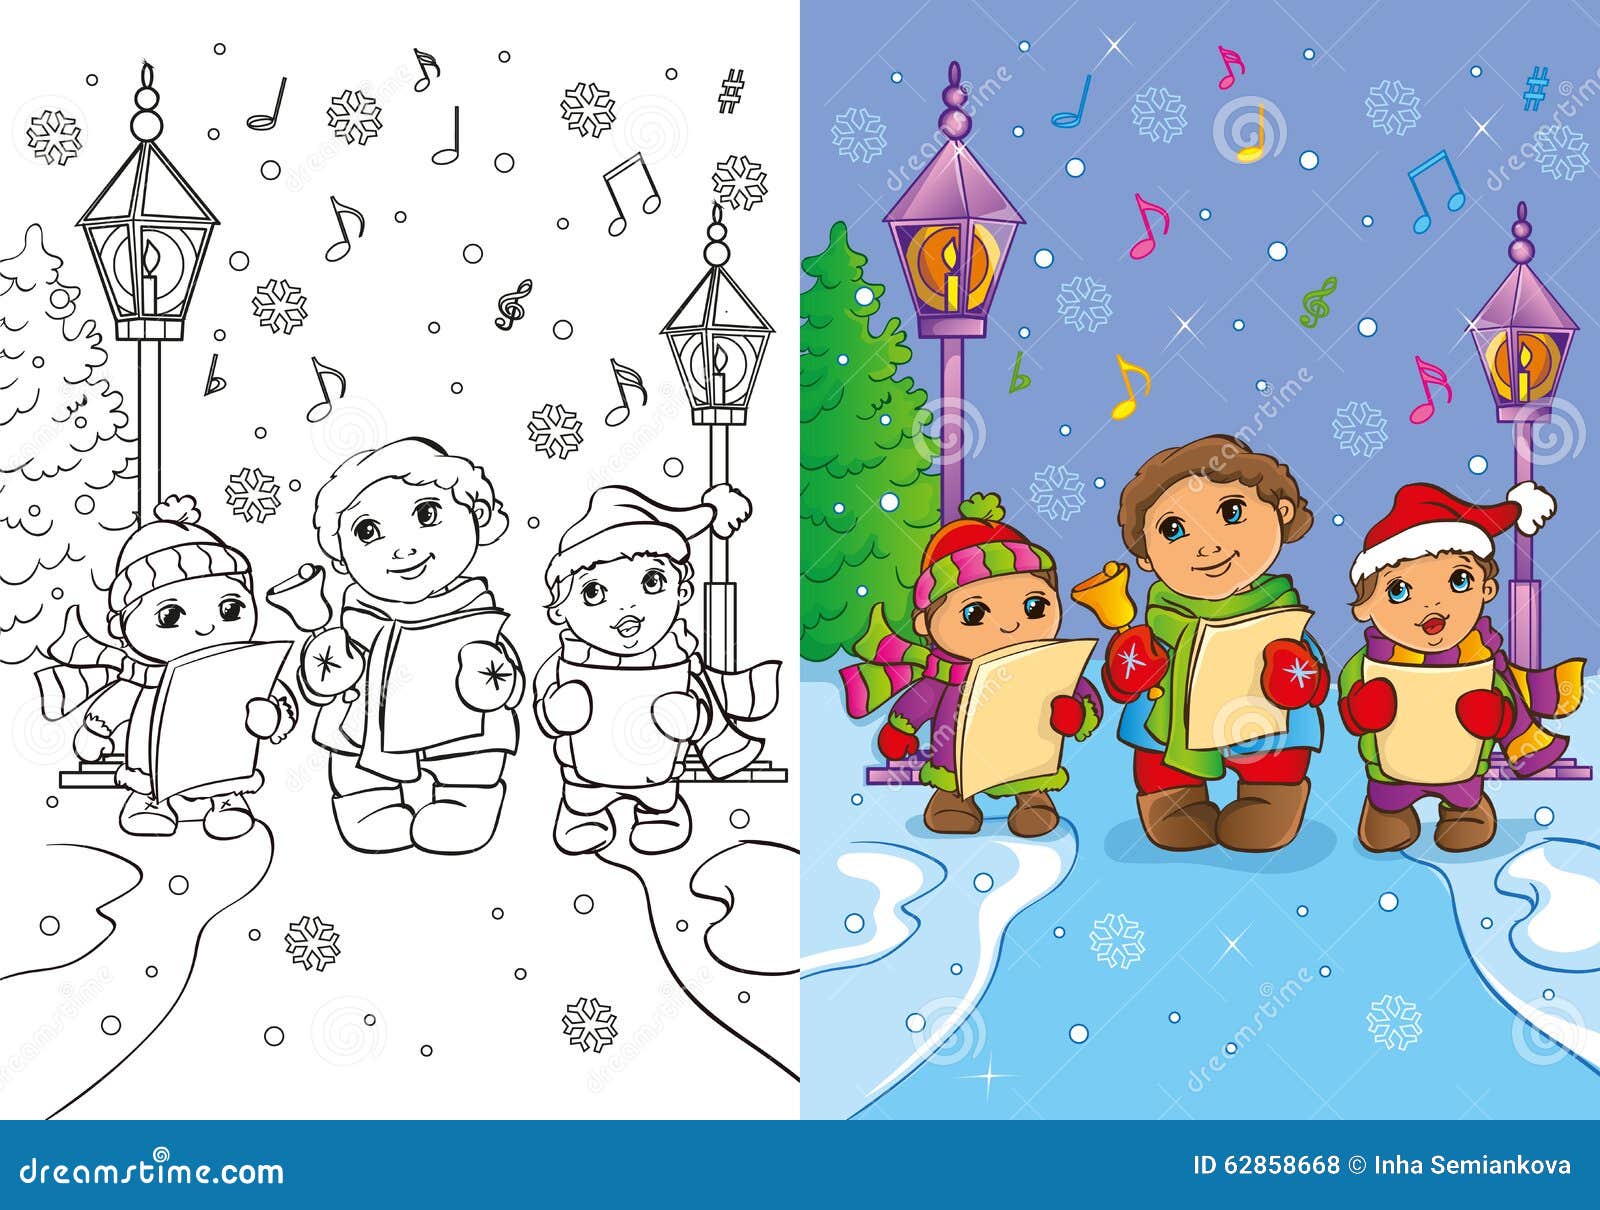 Canzoni Di Natale Per Bambini.Il Libro Da Colorare Dei Bambini Canta Le Canzoni Di Natale Illustrazione Di Stock Illustrazione Di Natale Bianco 62858668